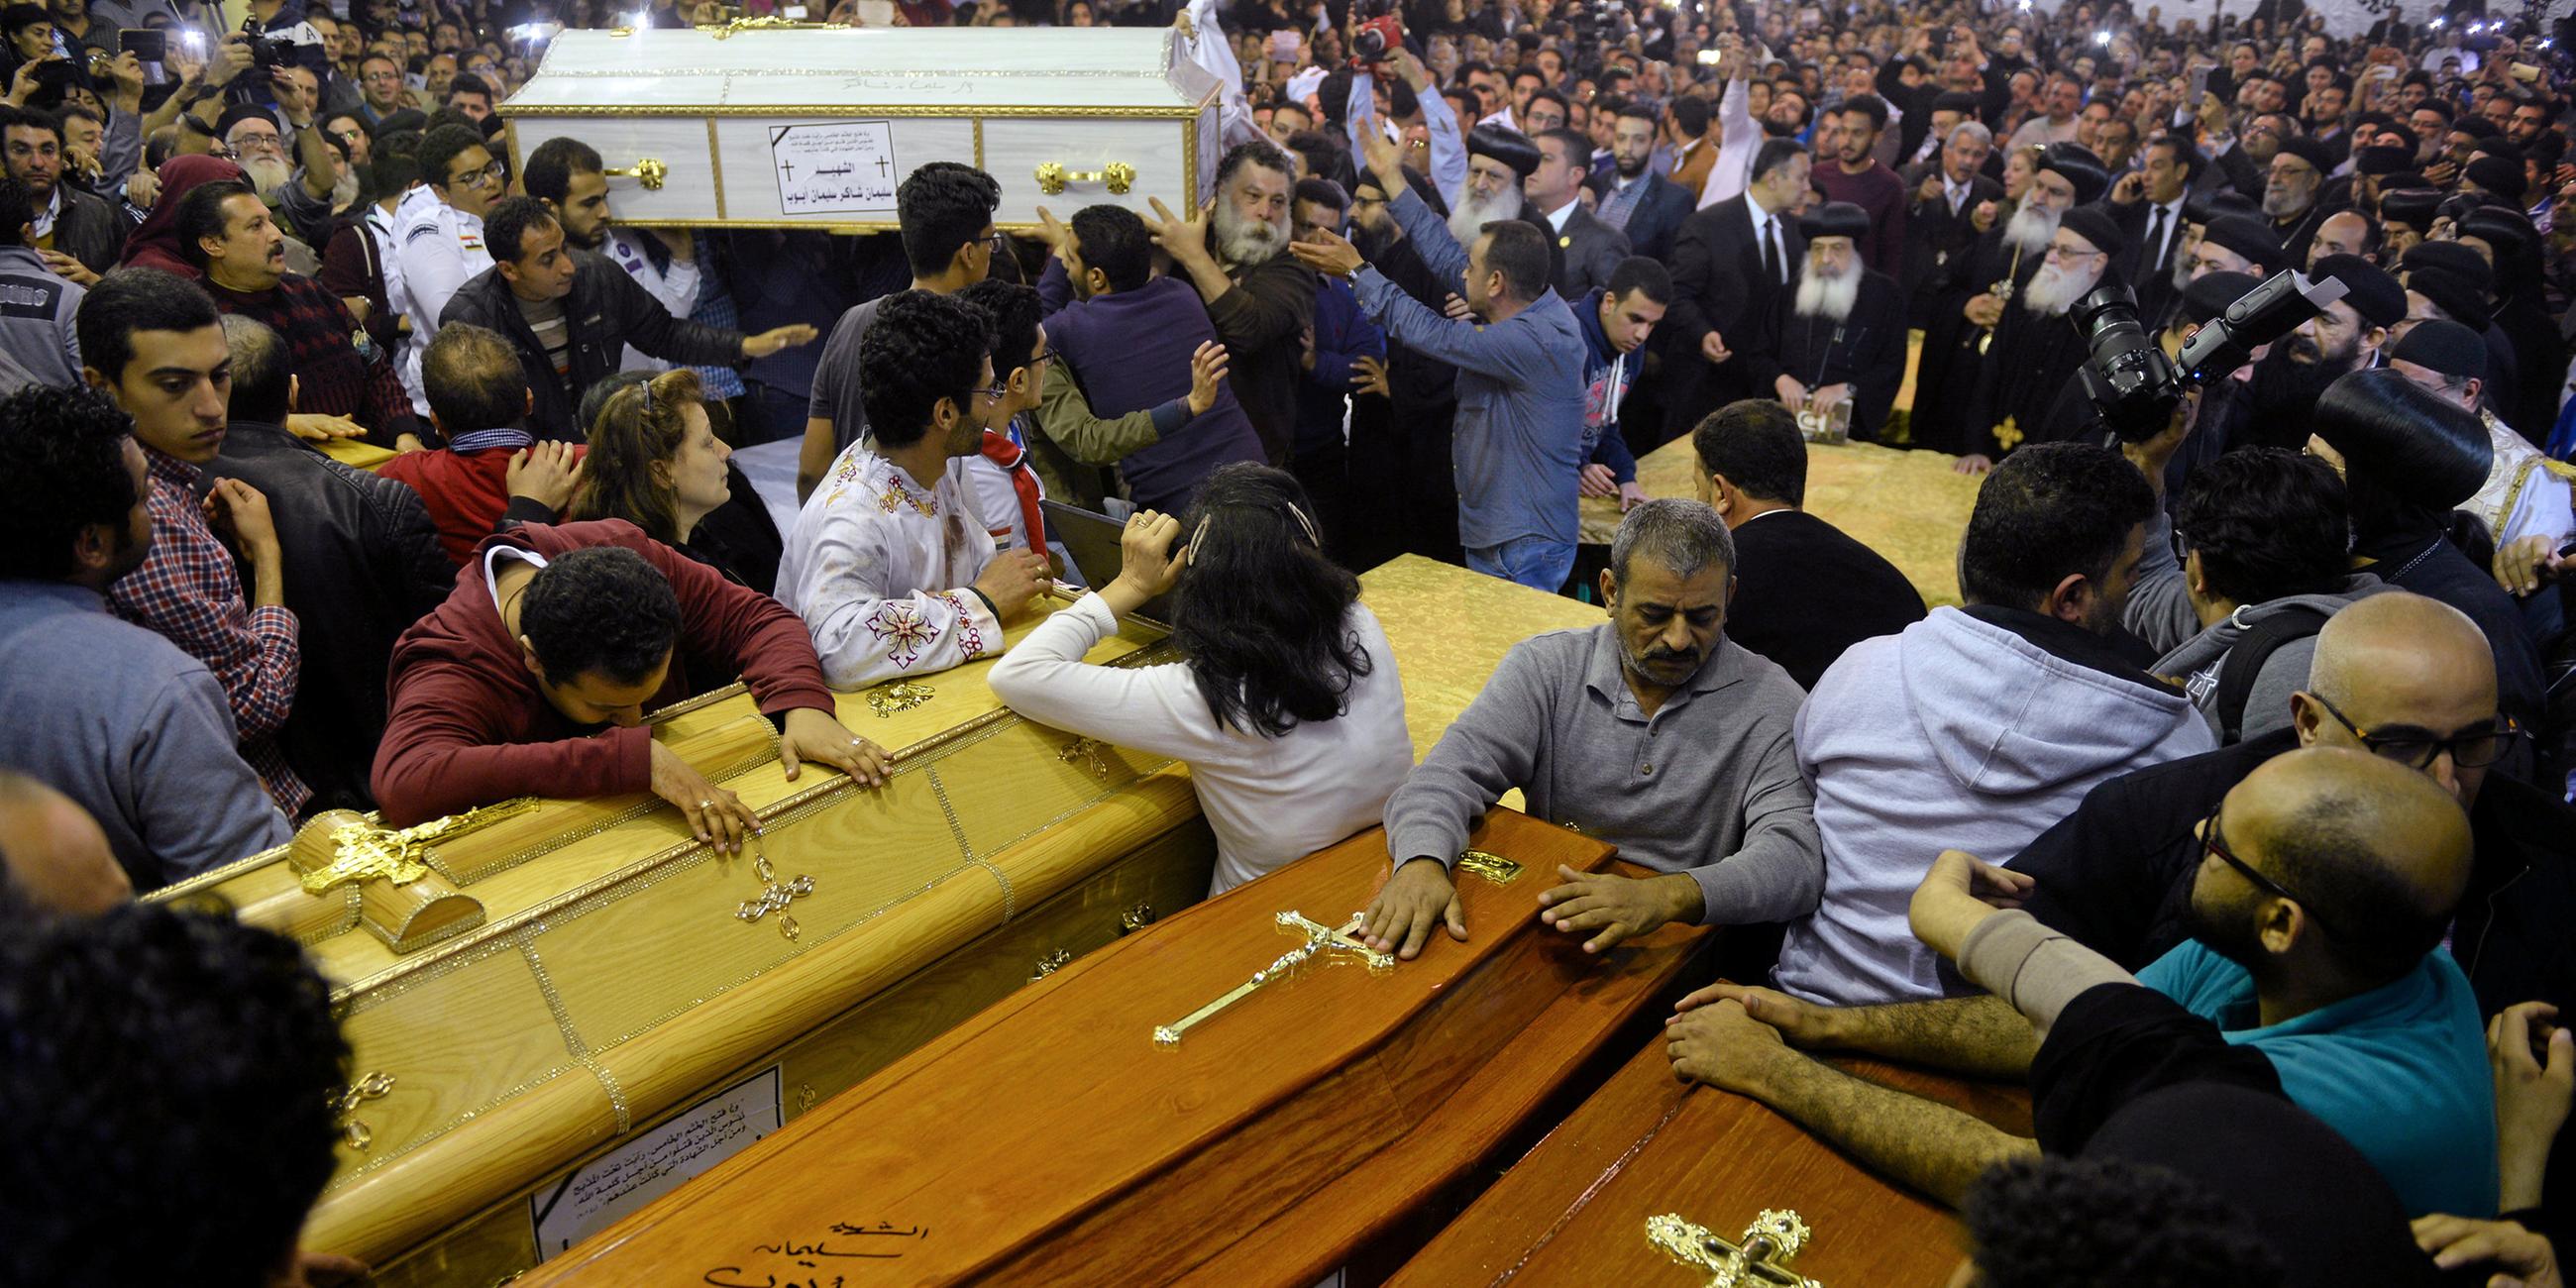 Trauerfeier für die am Palmsonntag bei einem Anschlag ums Leben gekommenen koptischen Christen, aufgenommen am 09.04.2017 in Tanta (Ägypten)